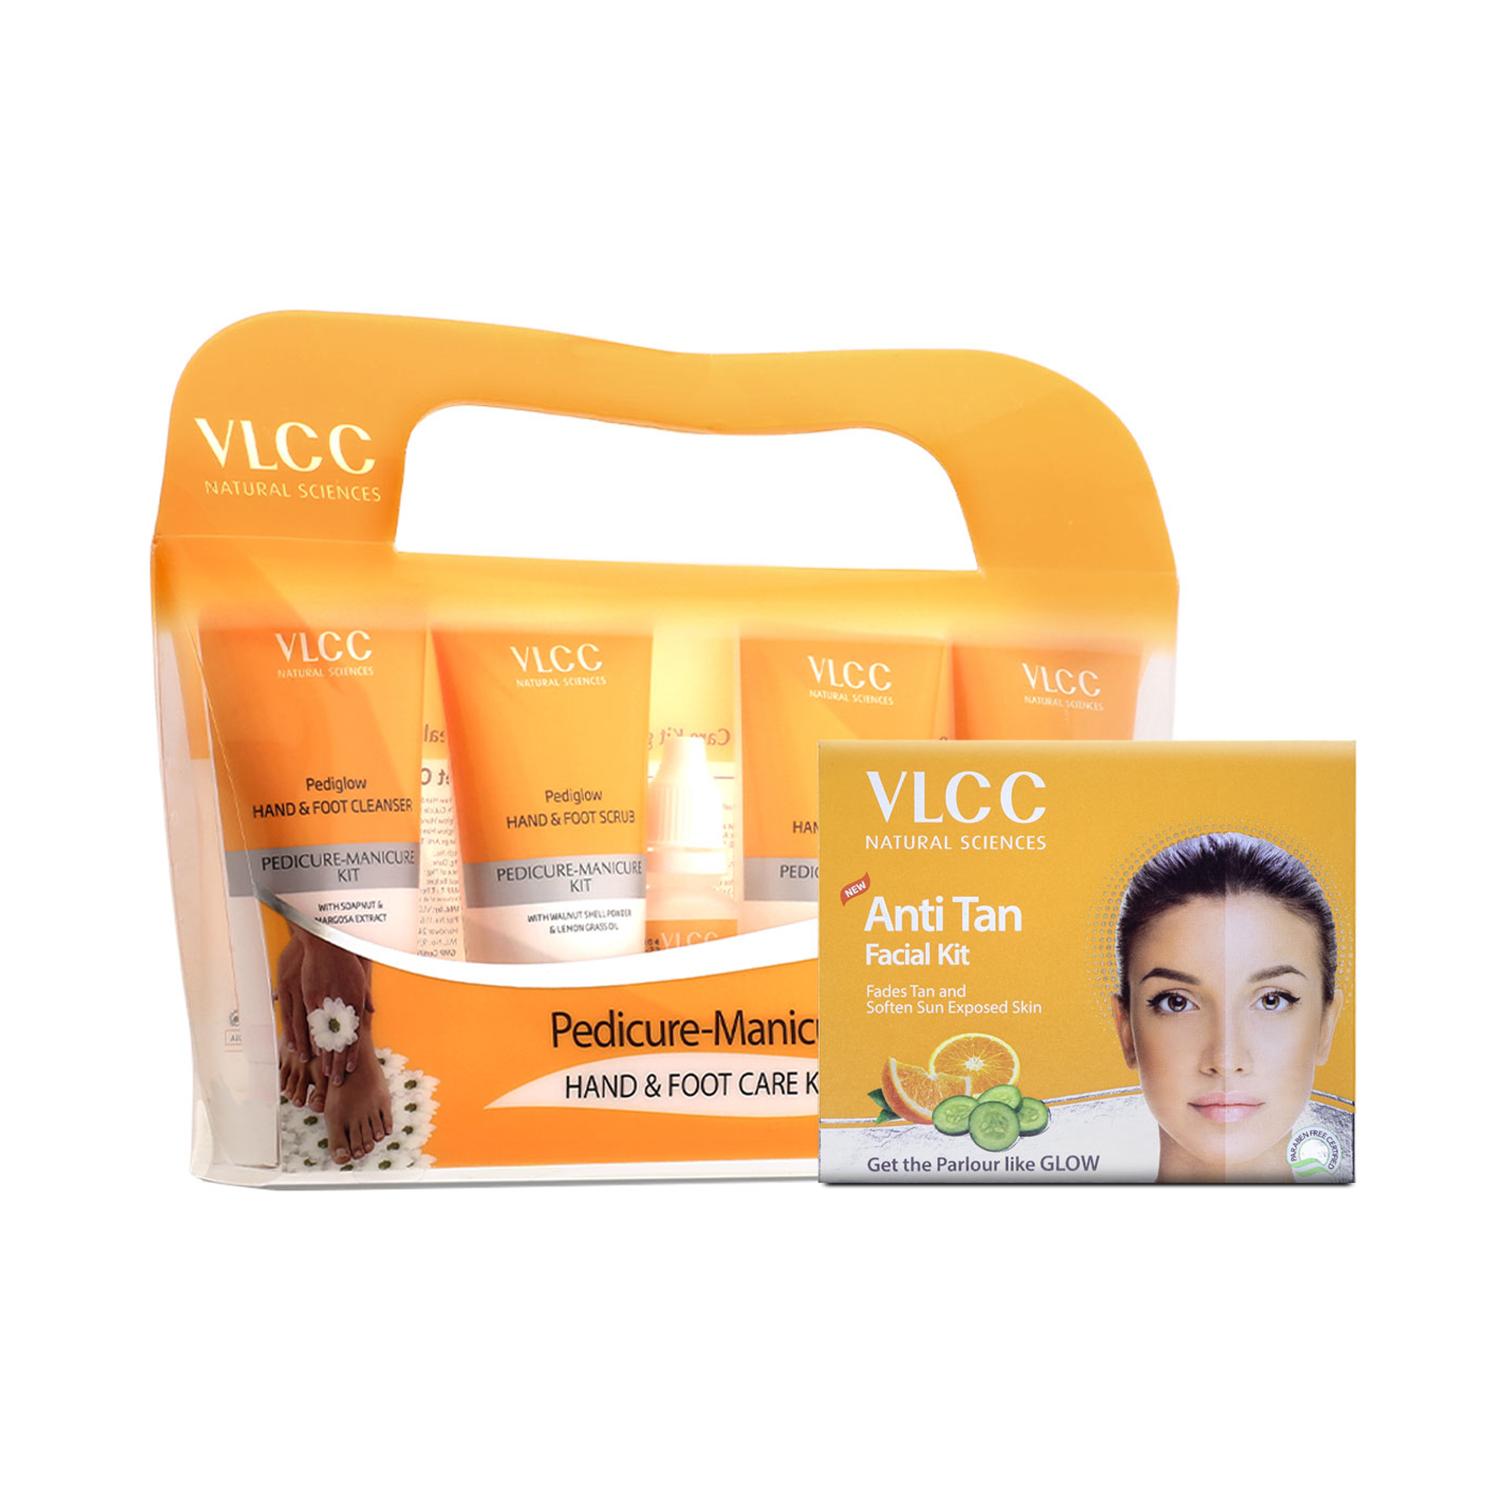 VLCC | VLCC Pedicure Manicure & Anti Tan Facial Kit